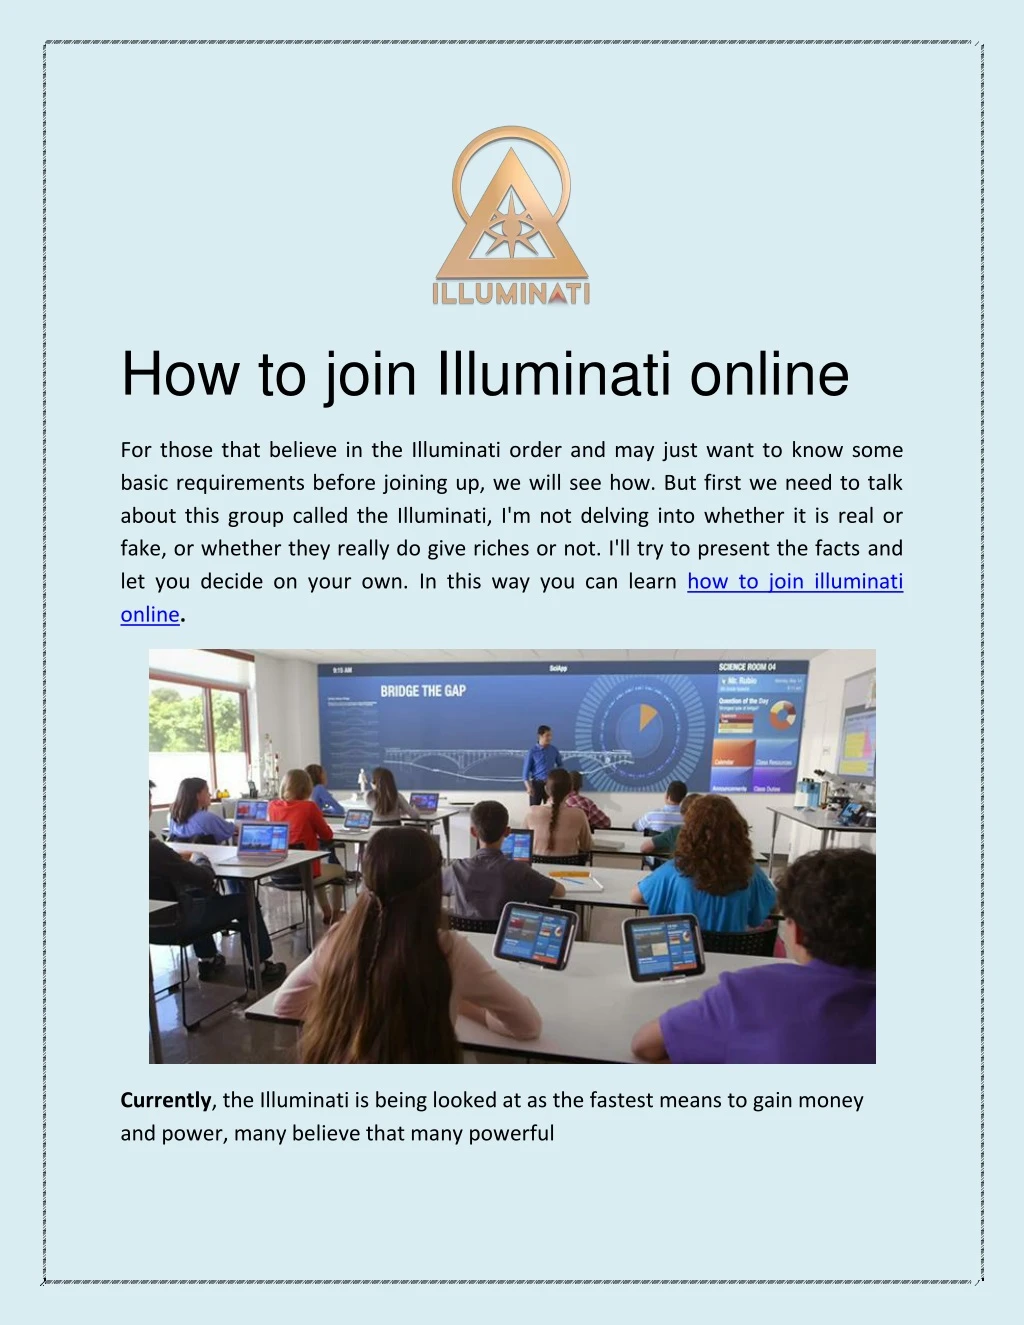 how to join illuminati online